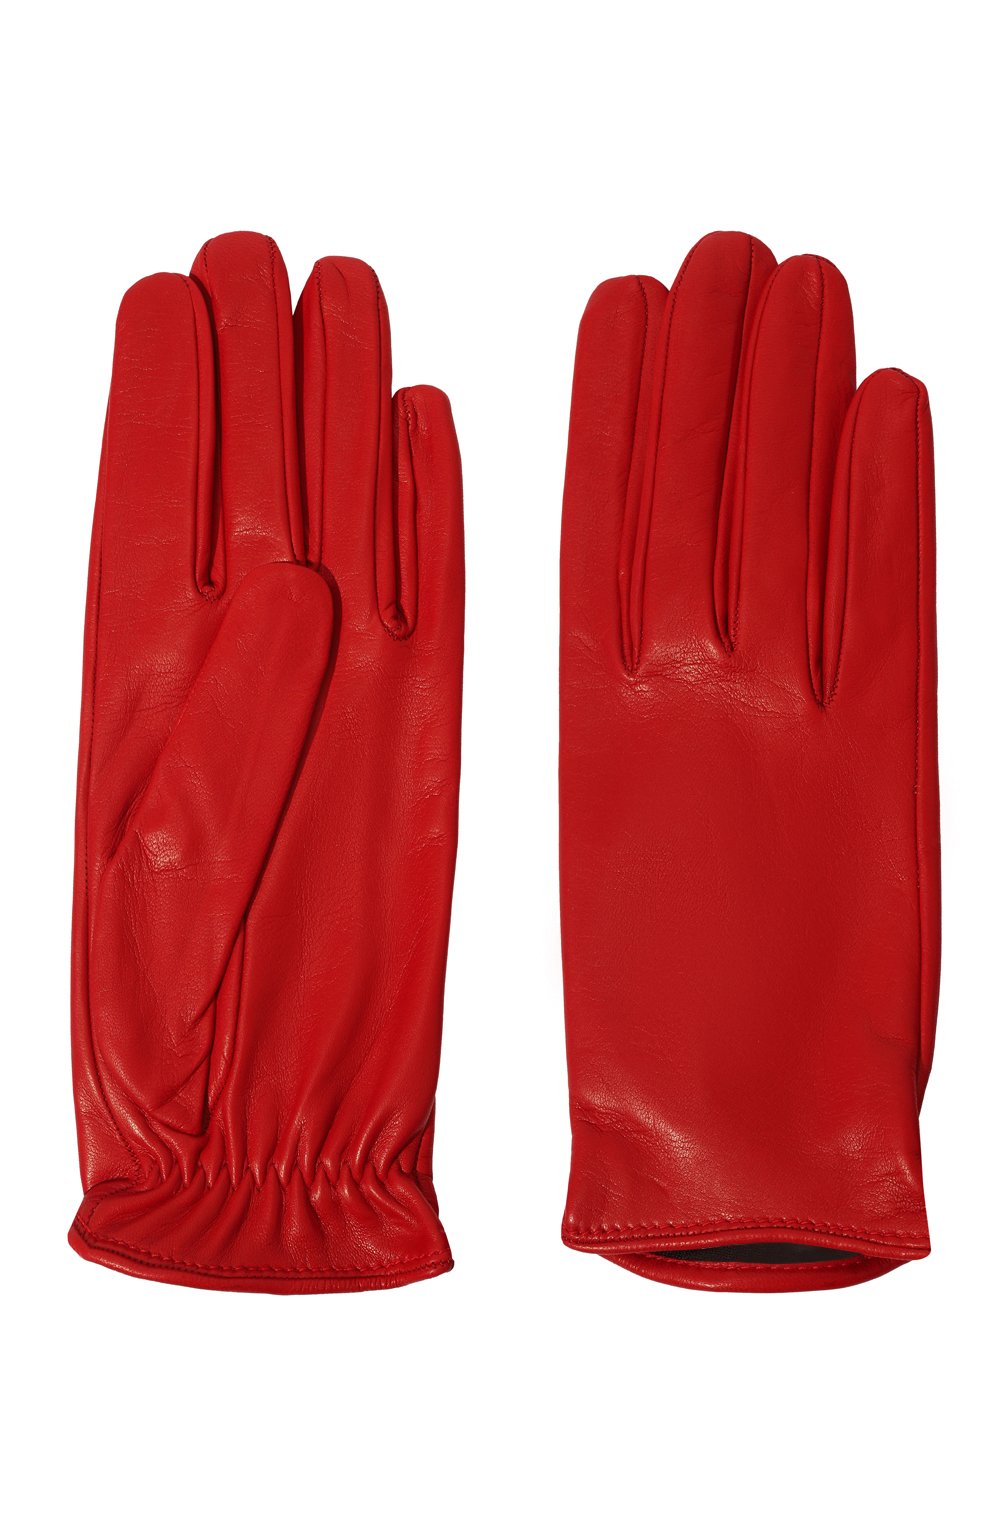 Женские кожаные перчатки DRIES VAN NOTEN красного цвета, арт. 222-010103-199 | Фото 2 (Материал: Натуральная кожа)